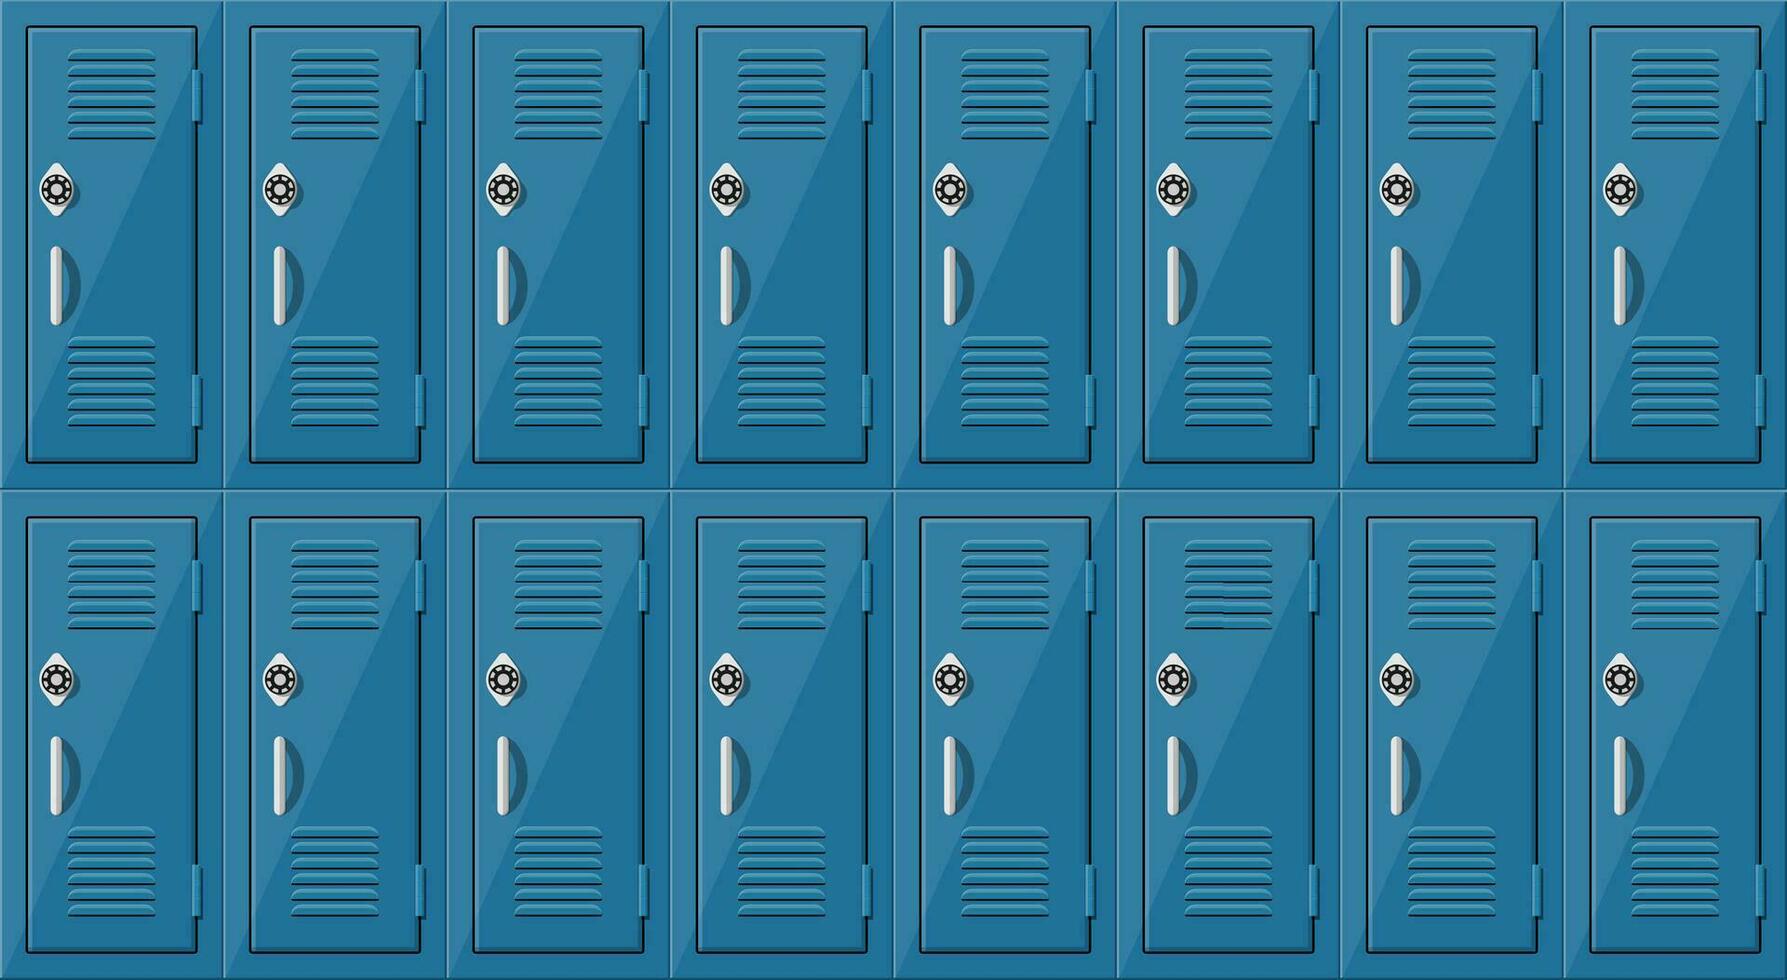 azul metal gabinetes casilleros en colegio o gimnasio con plata manejas y Cerraduras. seguro caja con puertas, armario, compartimiento. vector ilustración en plano estilo